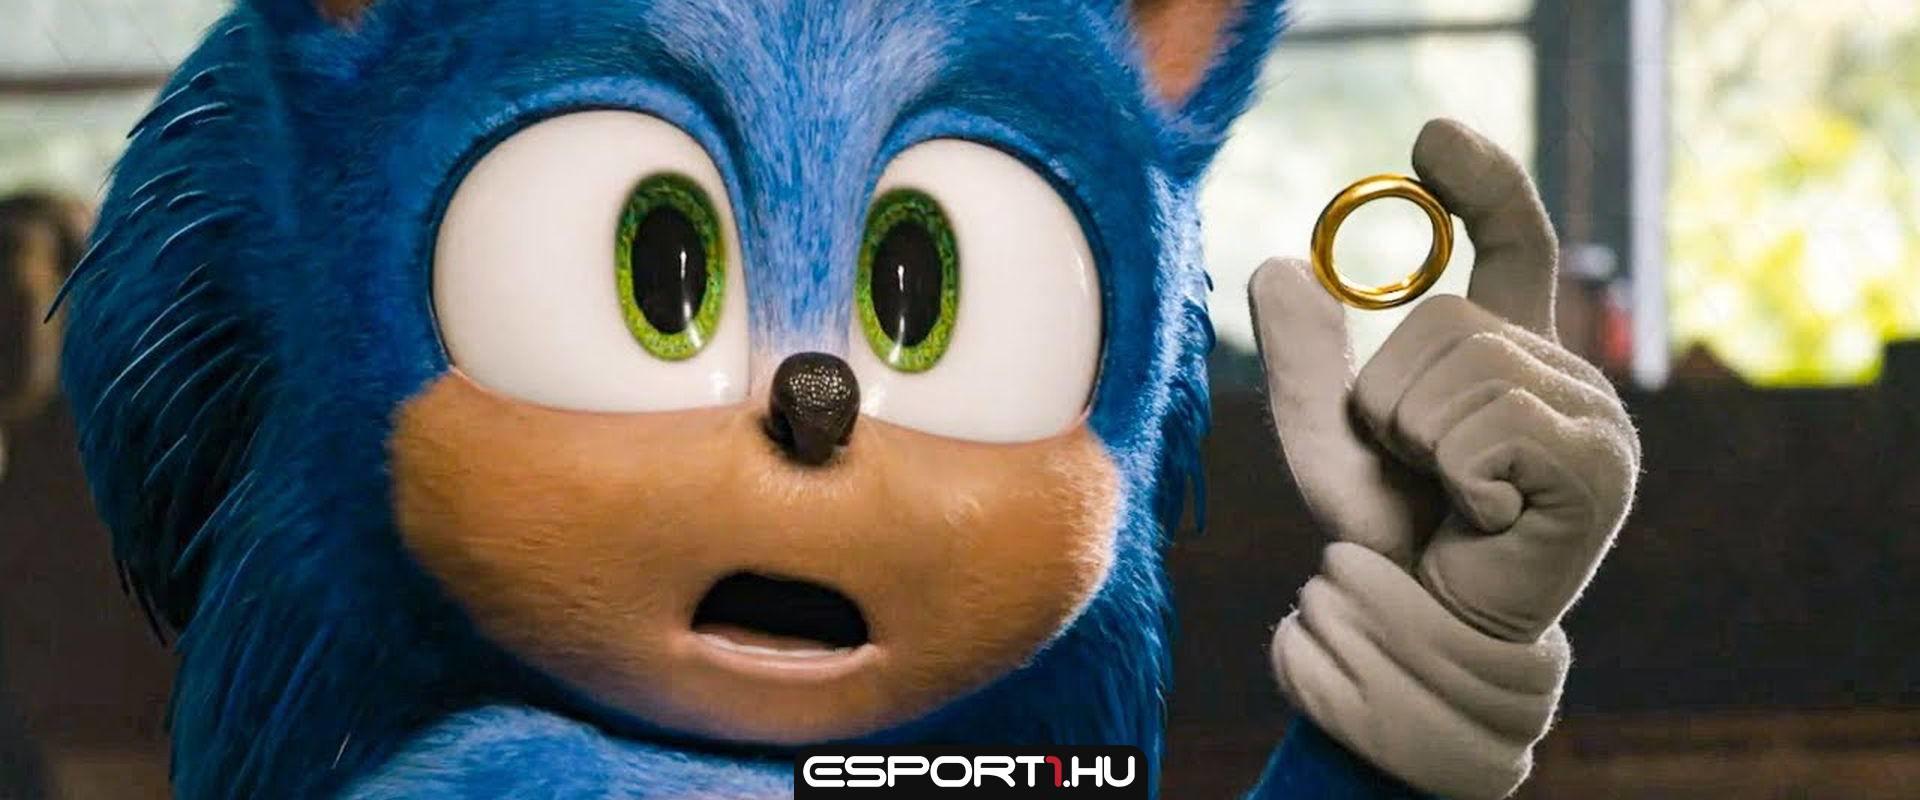 Bejelentették a Sonic, a sündisznó harmadik részének premier dátumát